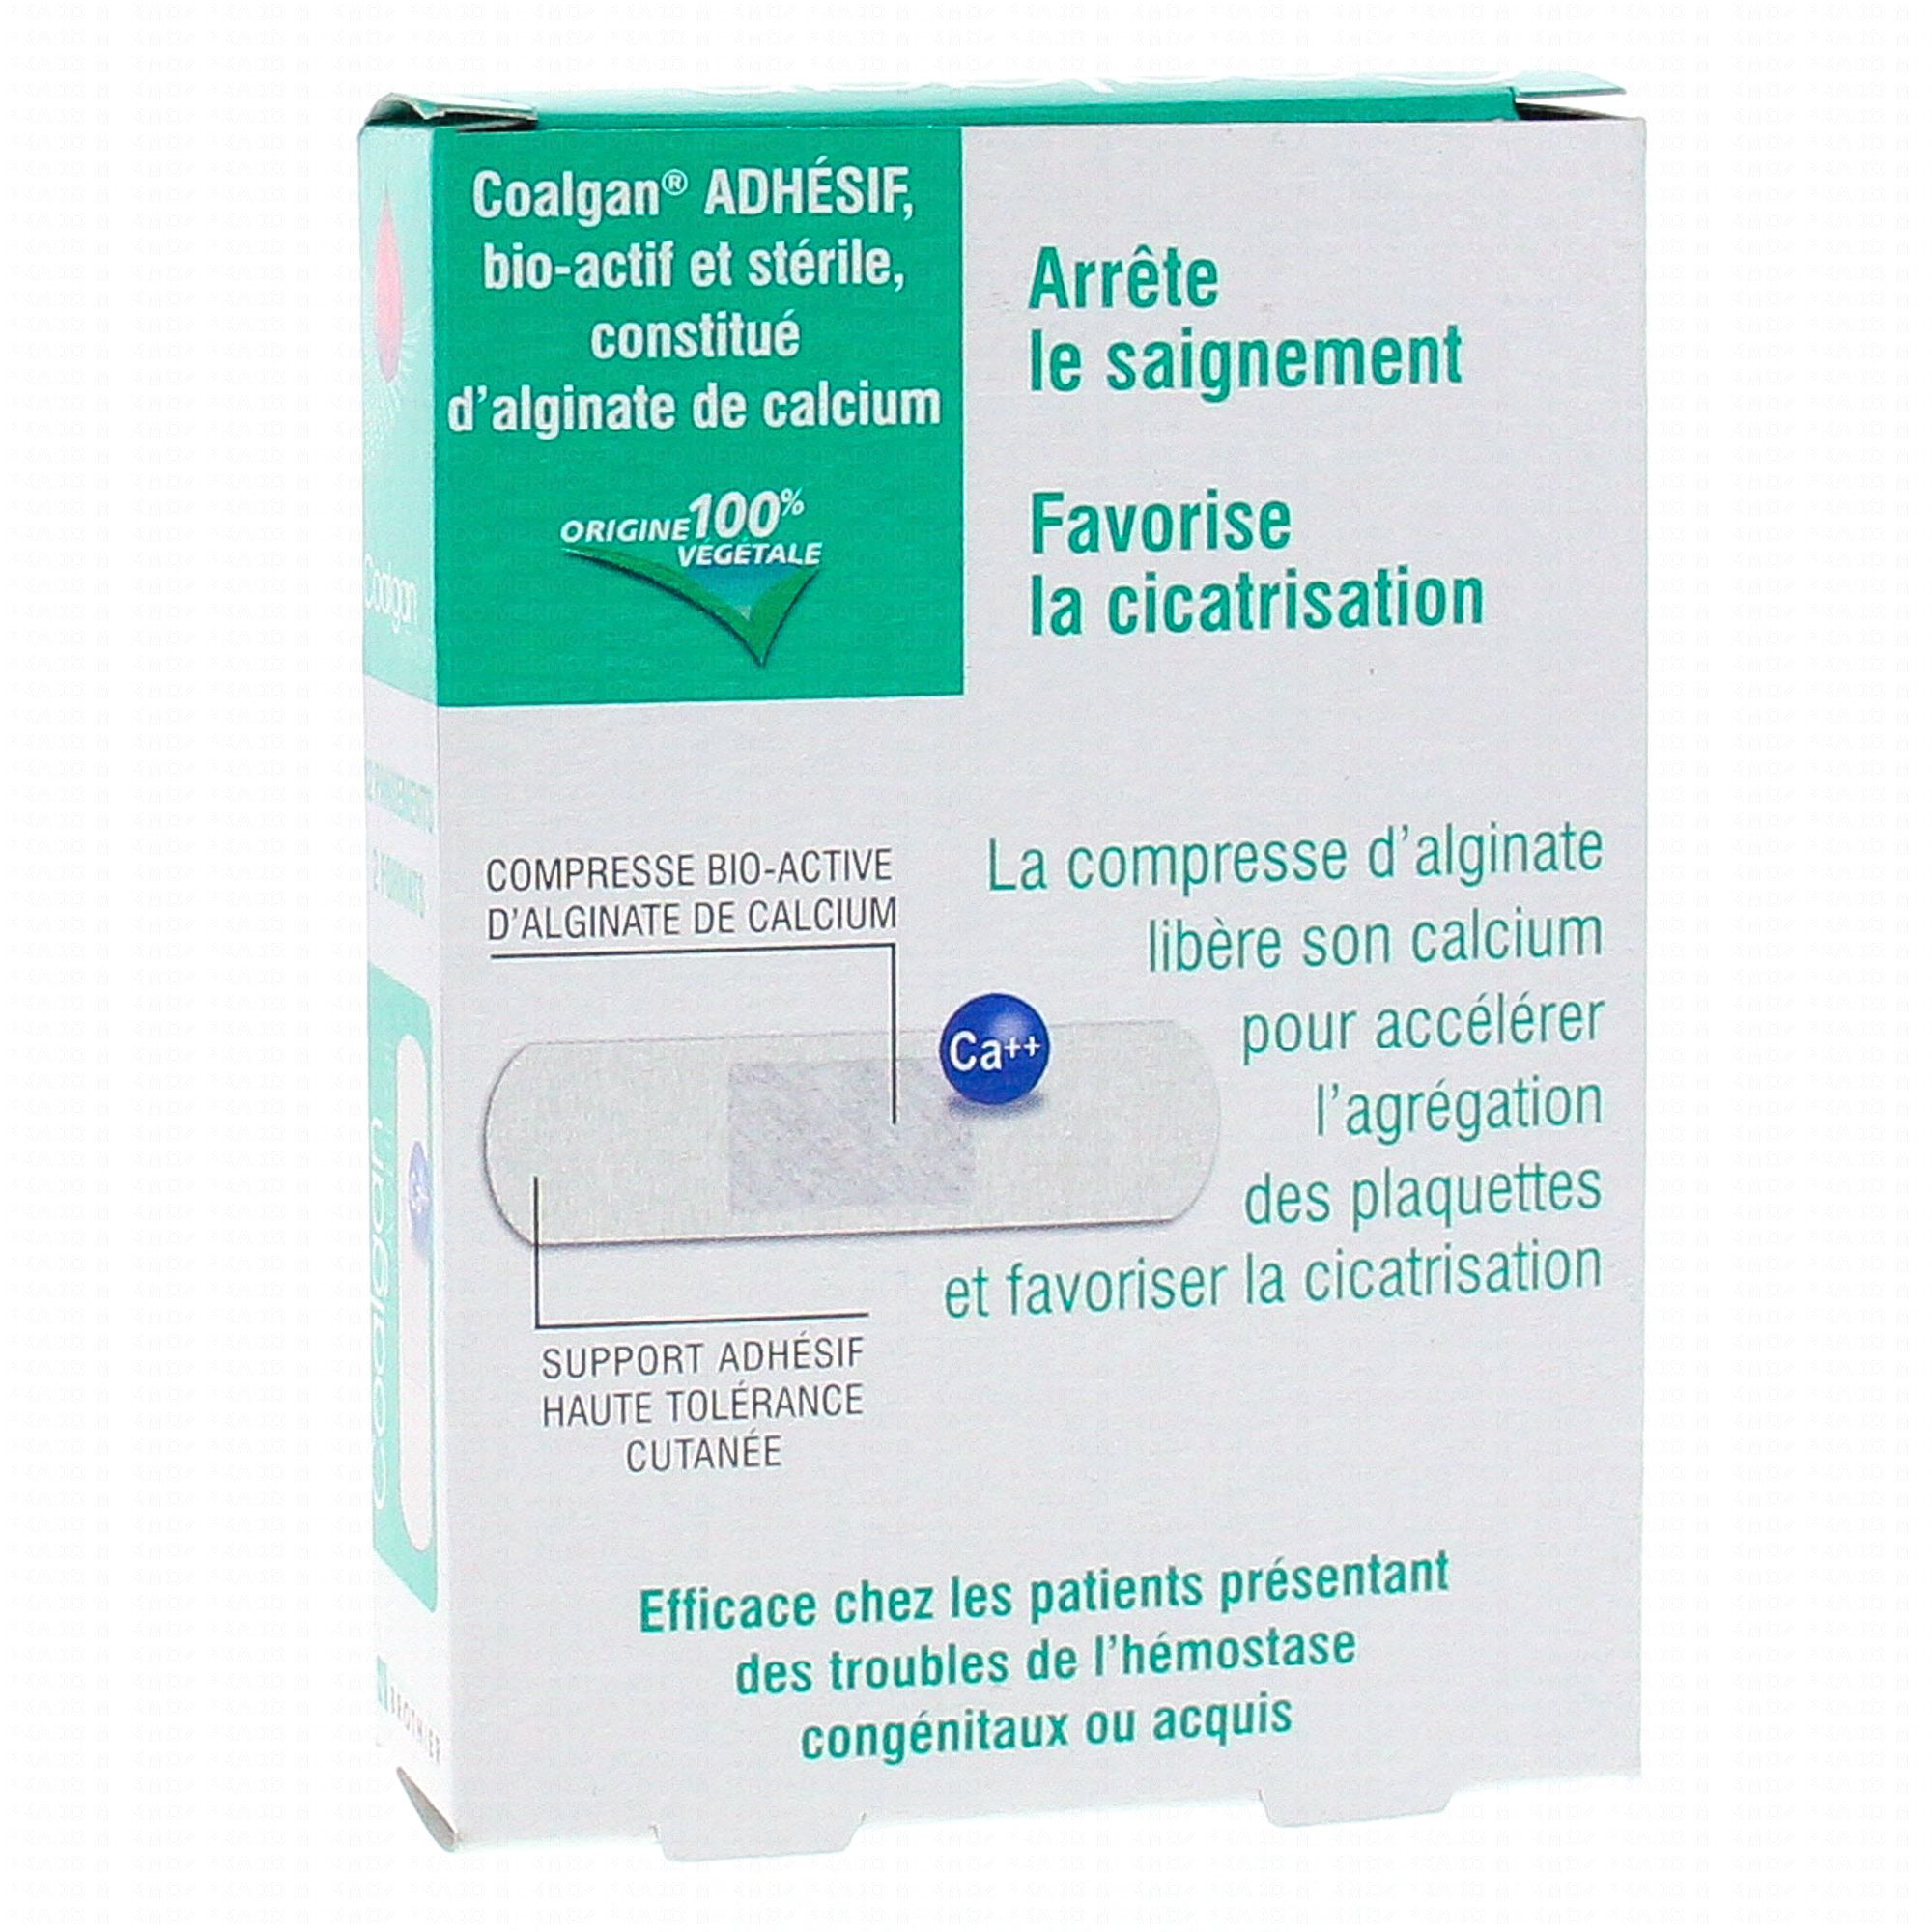 COALGAN Adhesif x 12 - Pharmacie Prado Mermoz